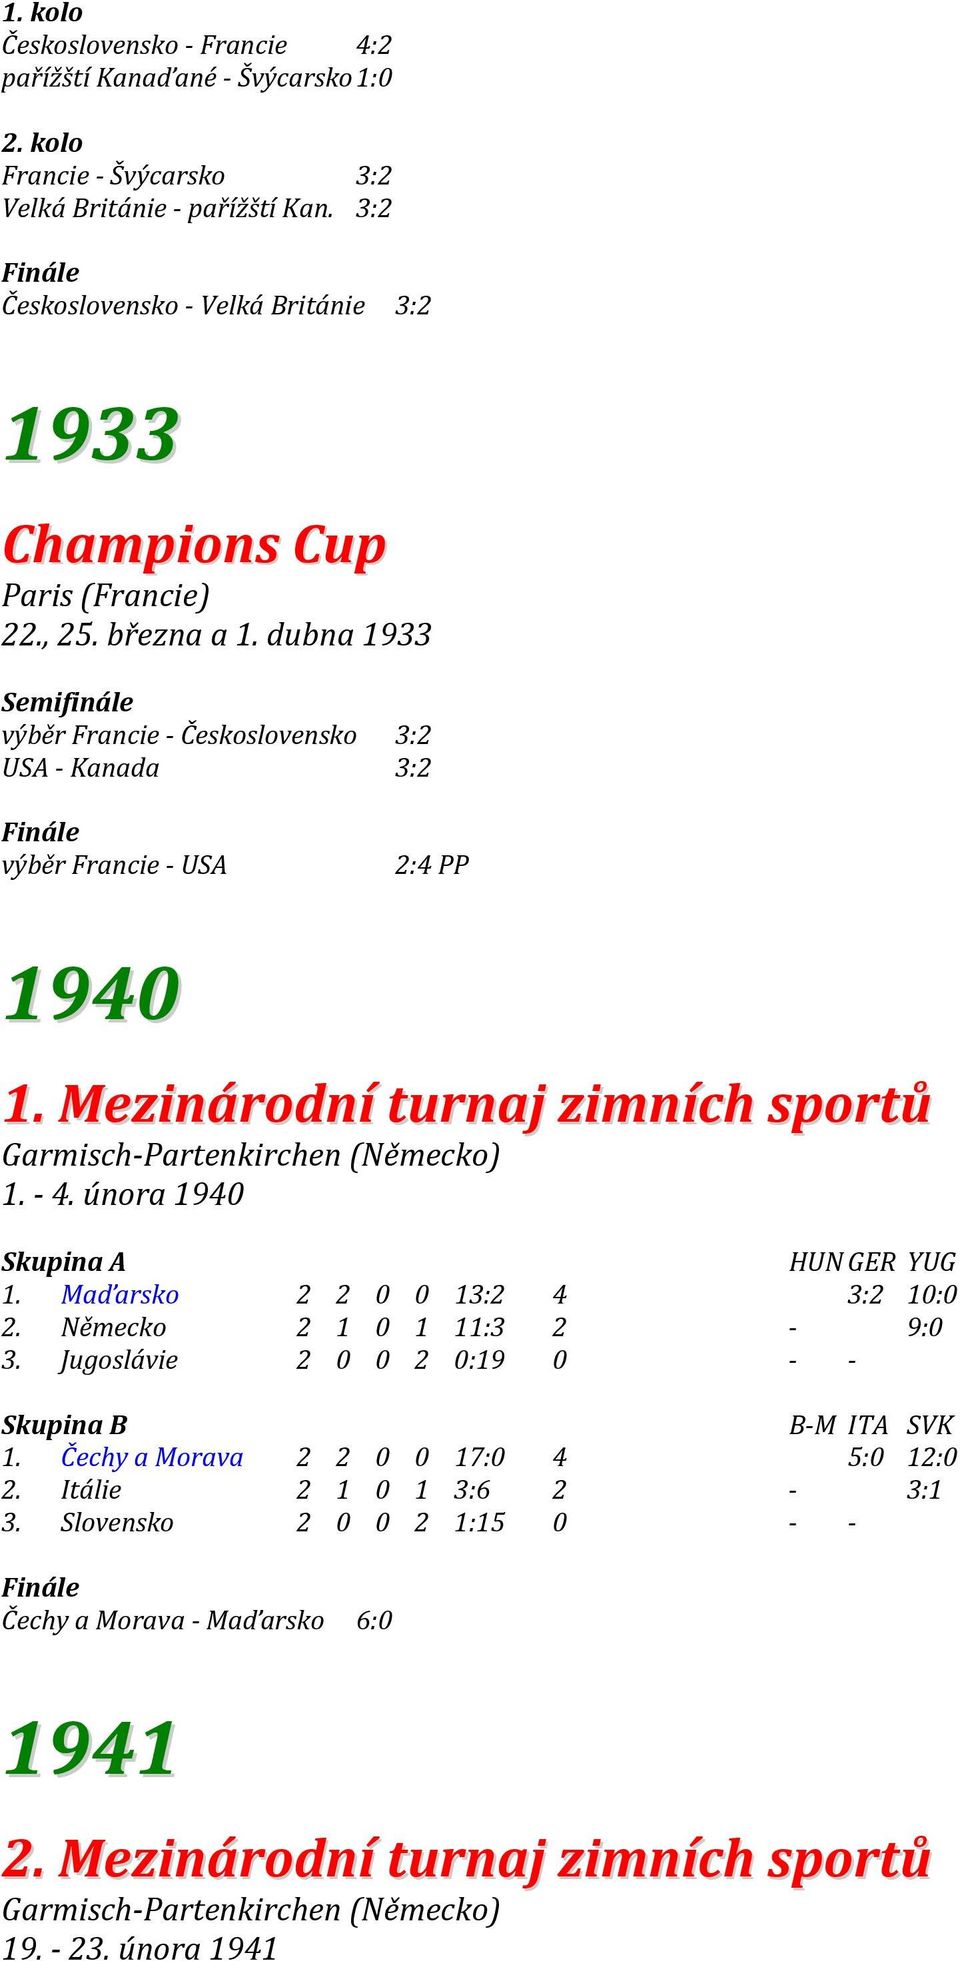 dubna 1933 Semifinále výběr Francie - Československo 3:2 USA - Kanada 3:2 výběr Francie - USA 2:4 PP 1940 1. Mezinárodní turnaj zimních sportů Garmisch-Partenkirchen (Německo) 1. - 4.